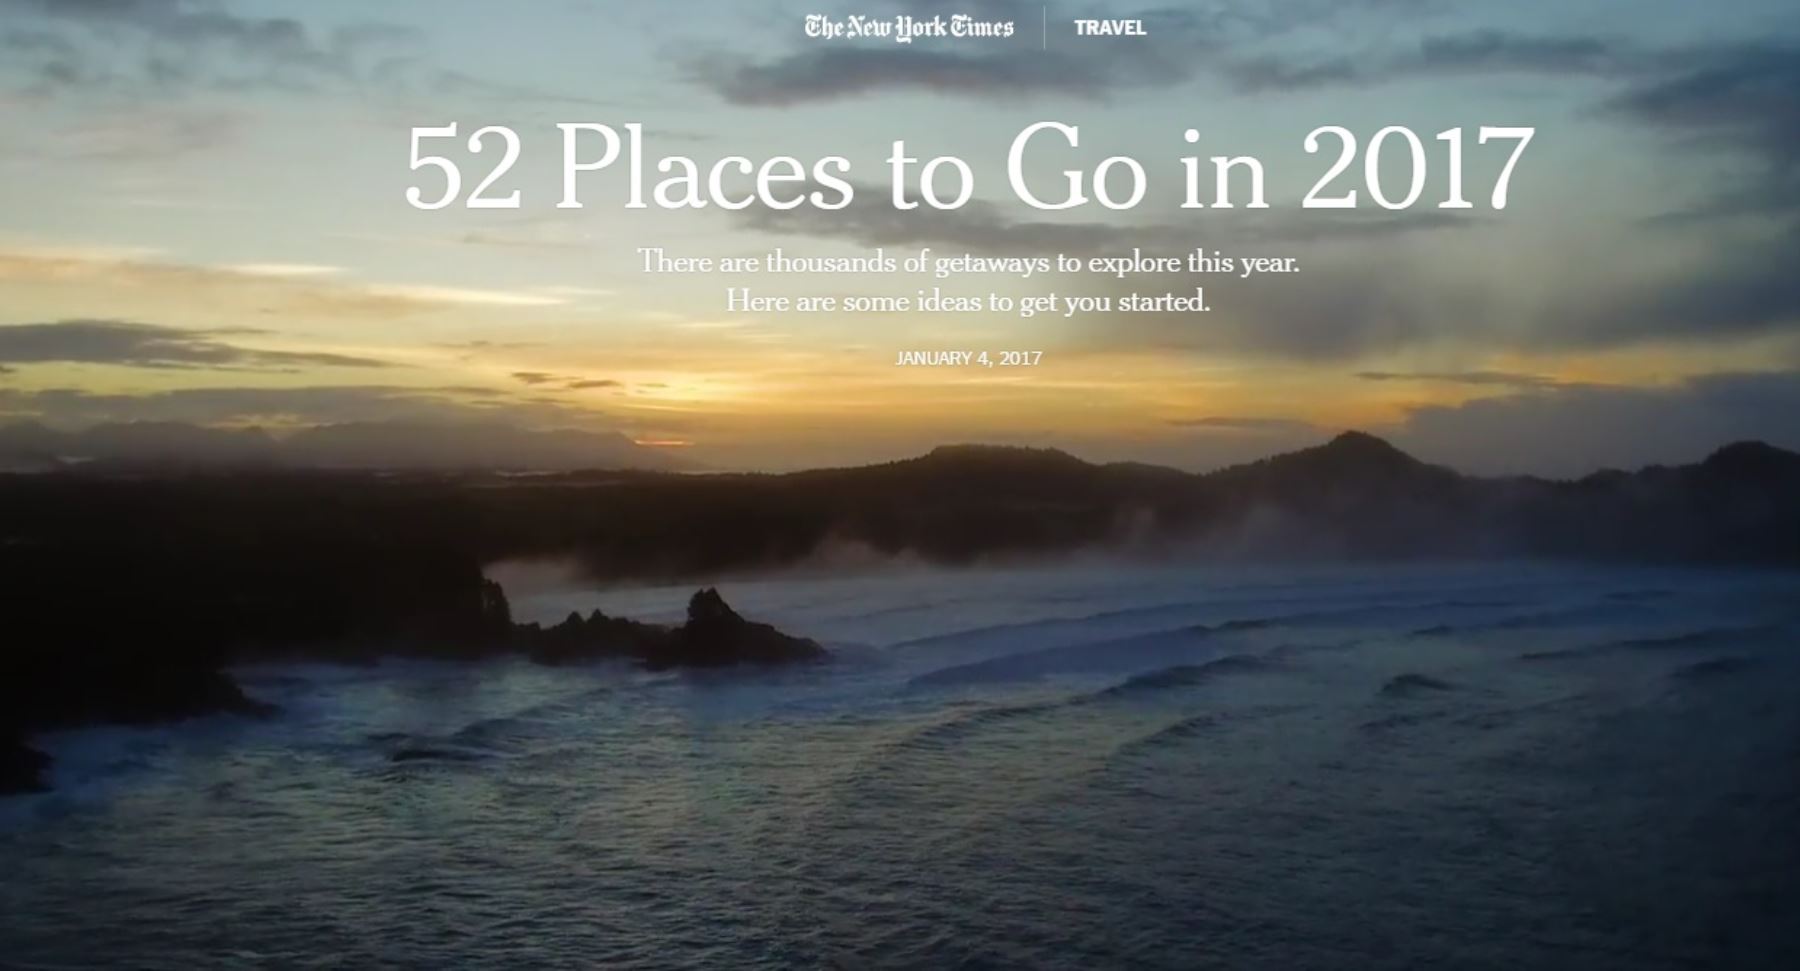 The New York Times y su lista de 52 lugares para visitar en el 2017